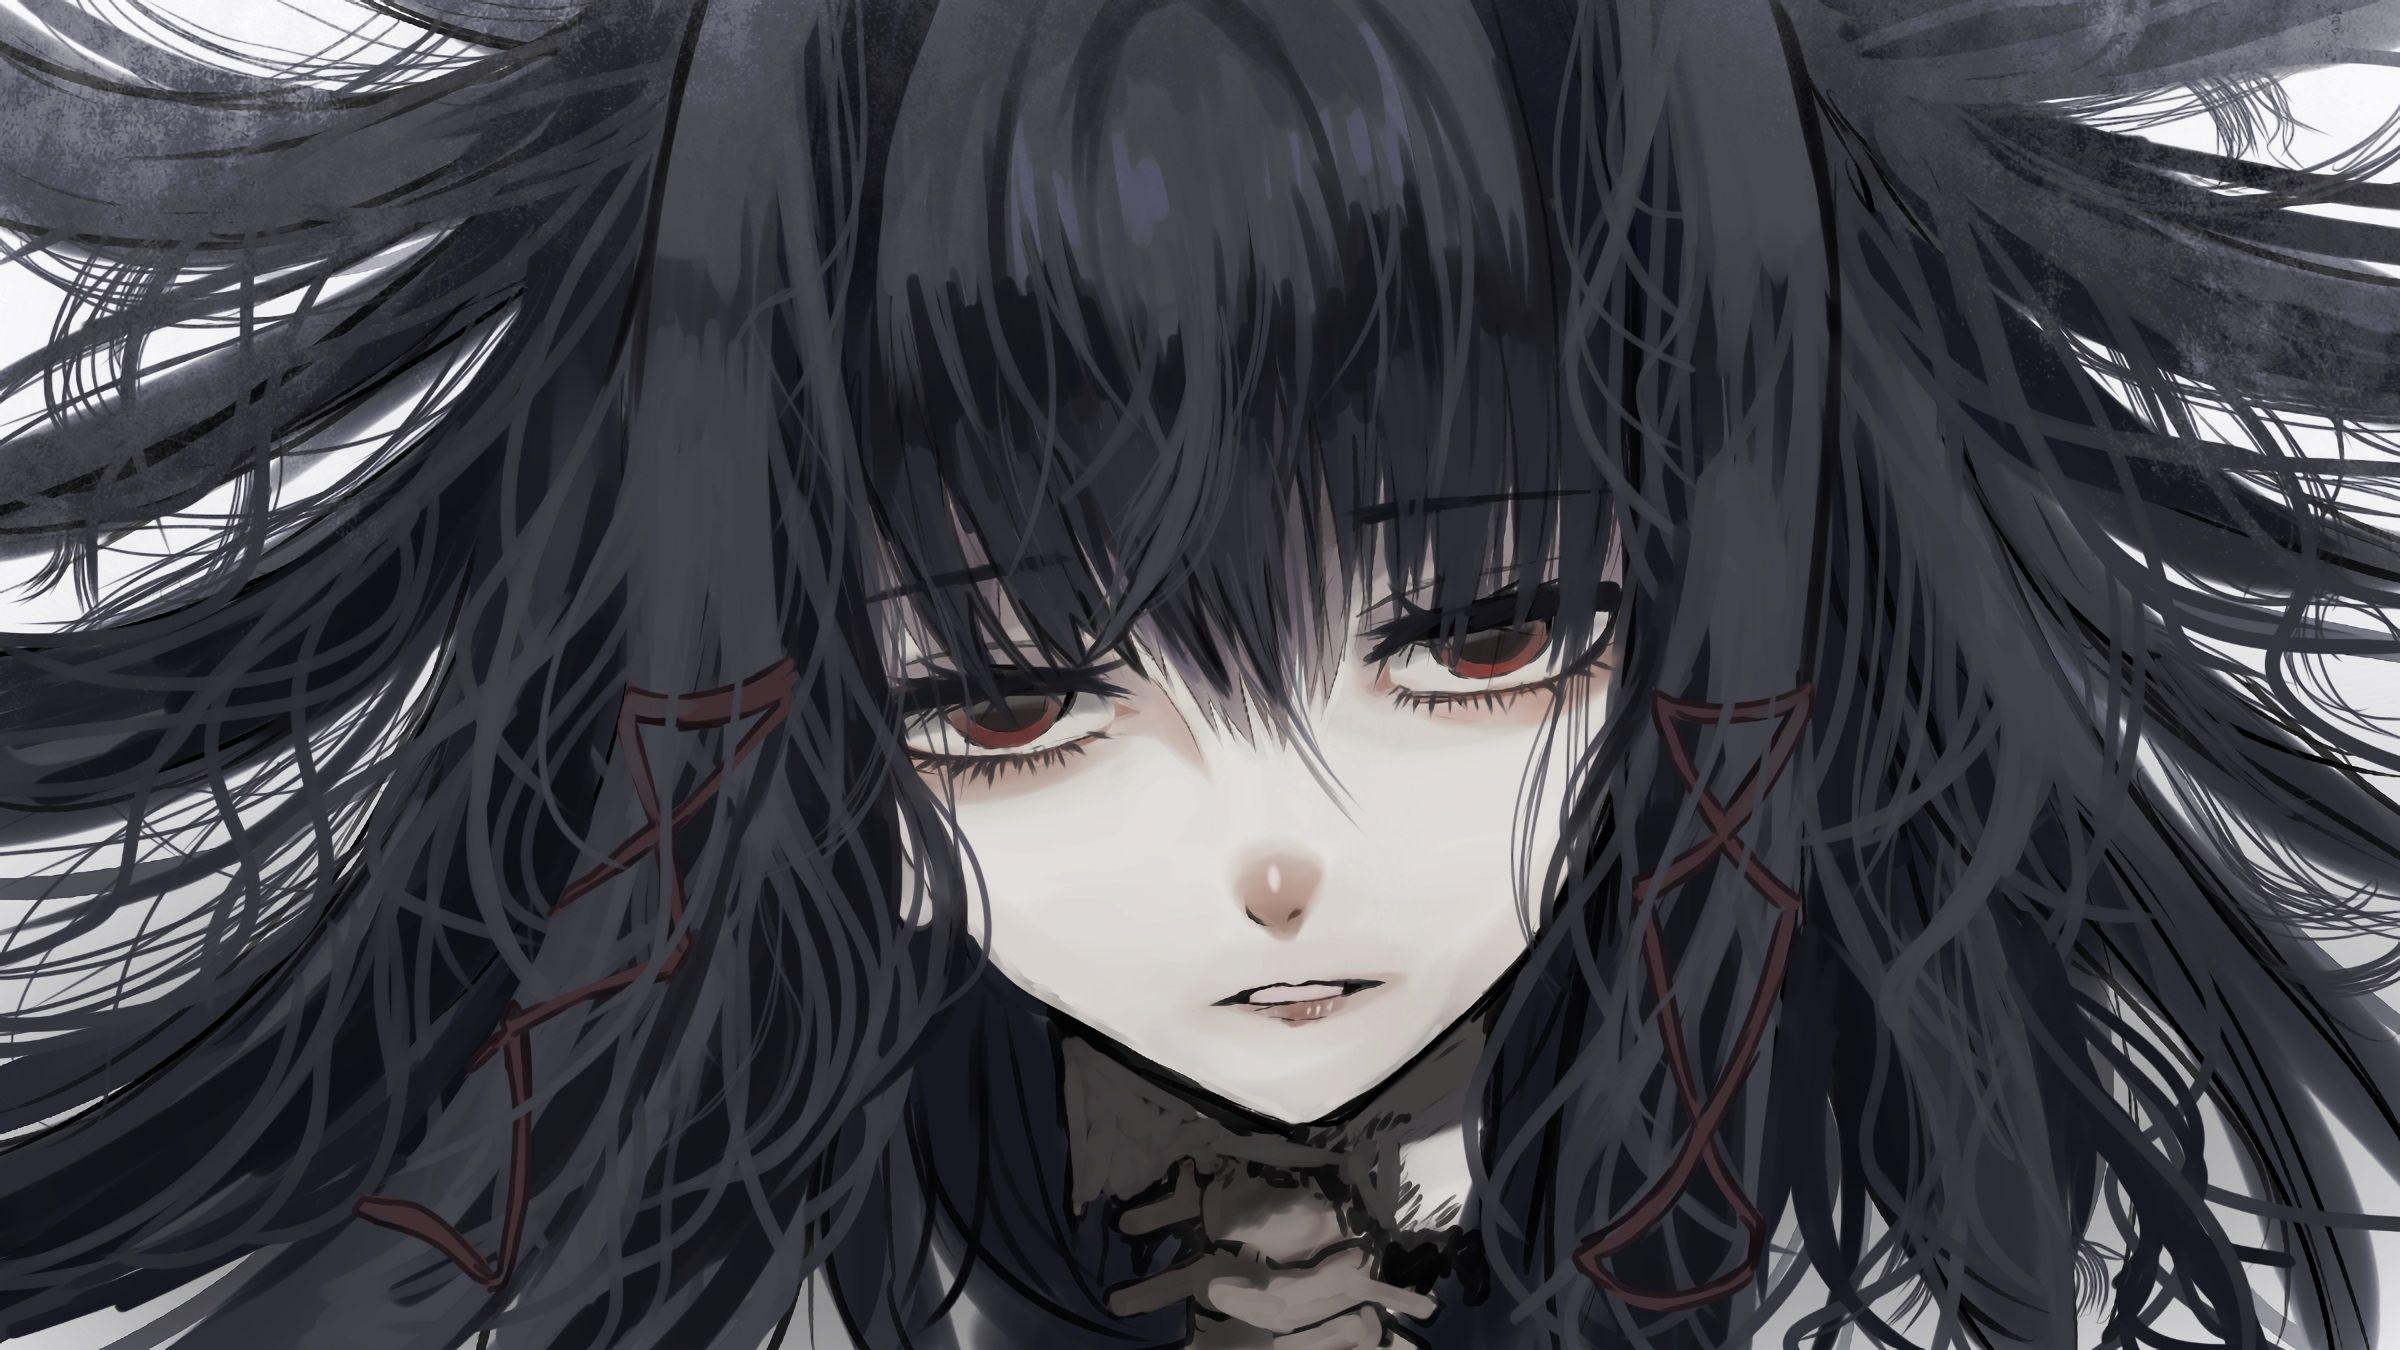 Anime Gothic Hình Nền Bí ẩn Cho Bạn Top Những Hình Ảnh Đẹp 